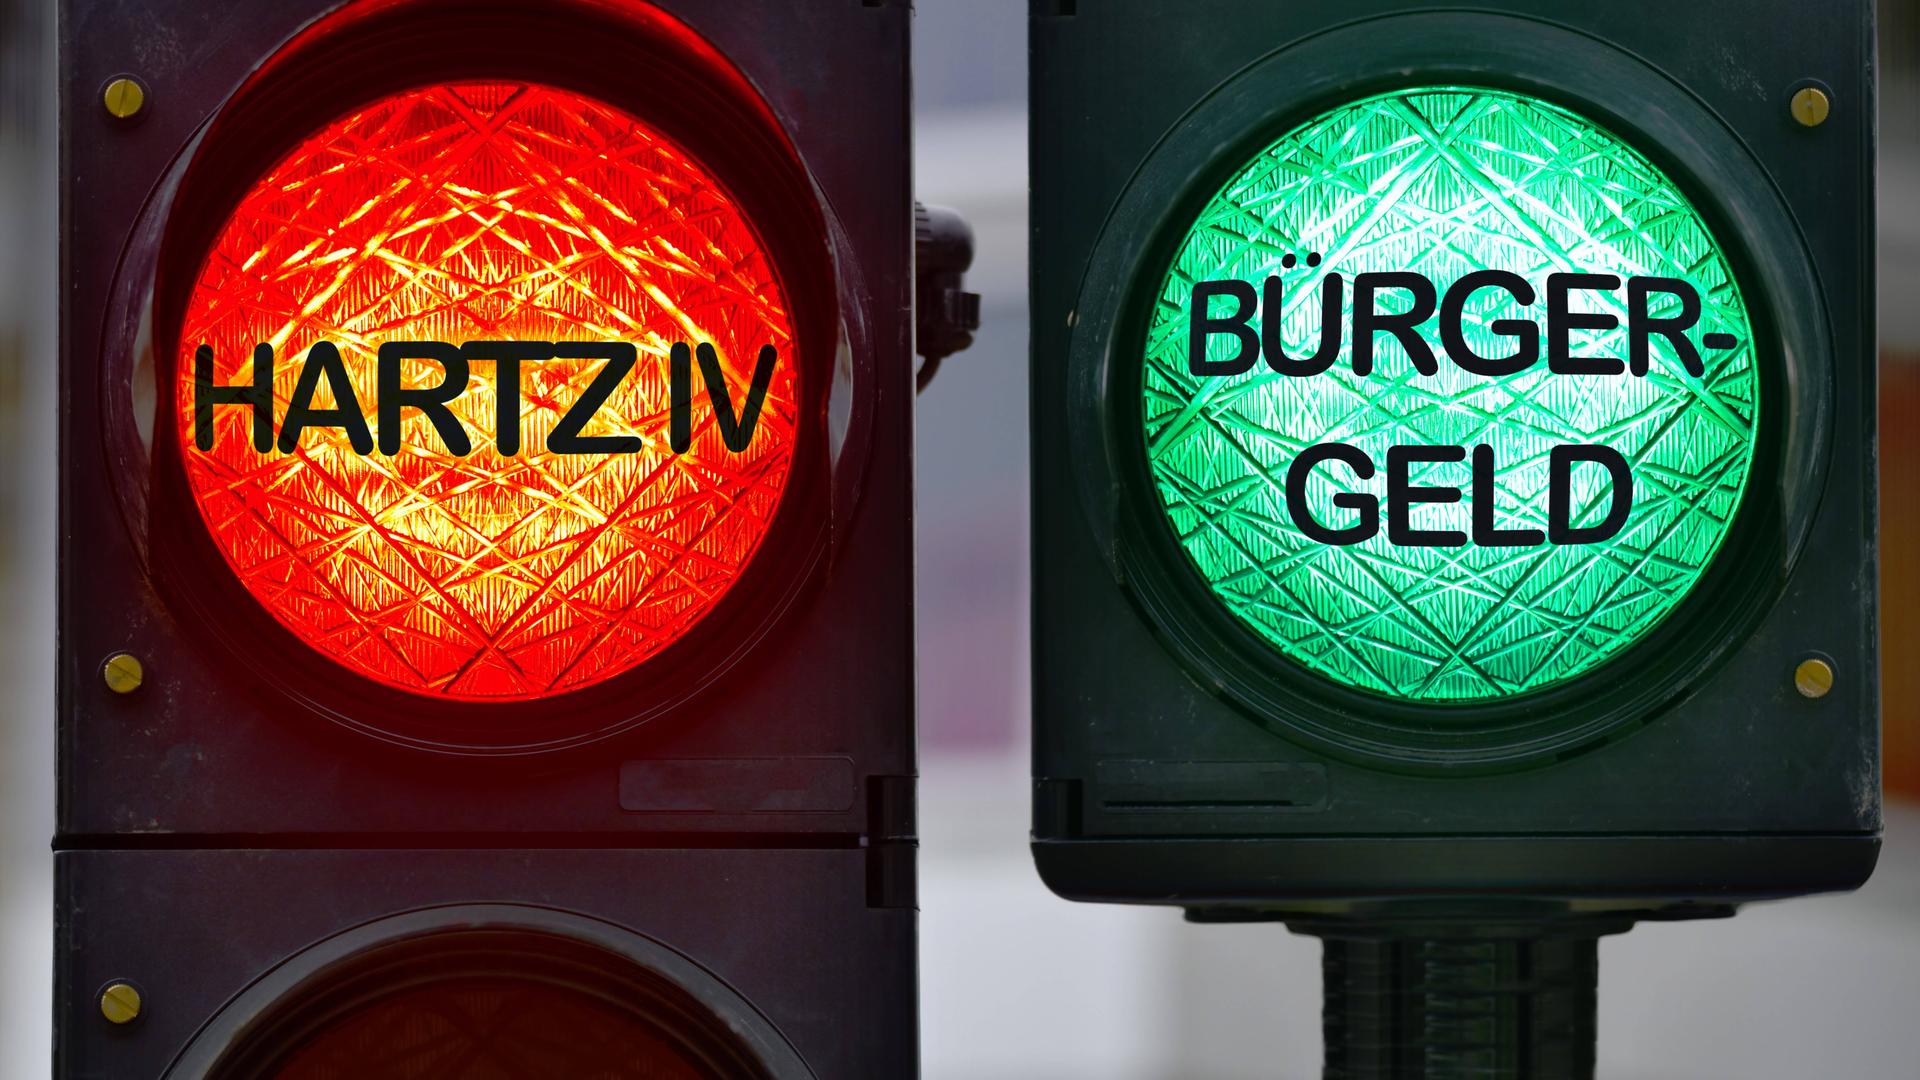 Rote und grüne Ampel mit Aufschrift Bürgergeld und Hartz IV.